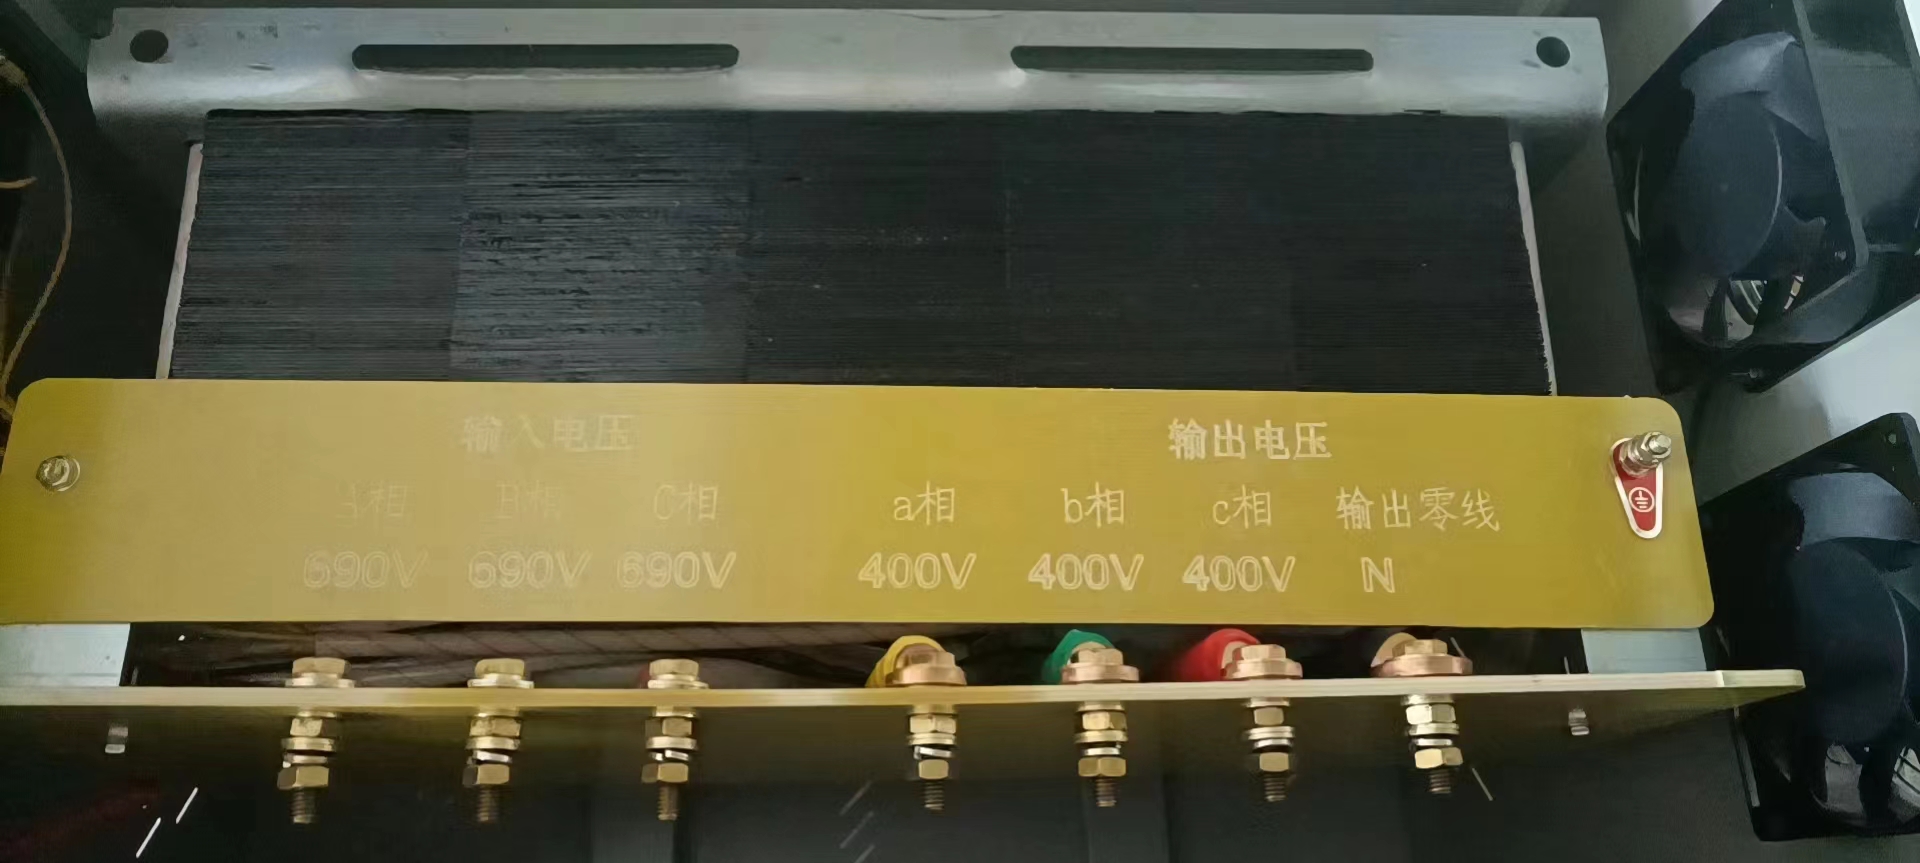 690V變400V光伏隔離變壓器